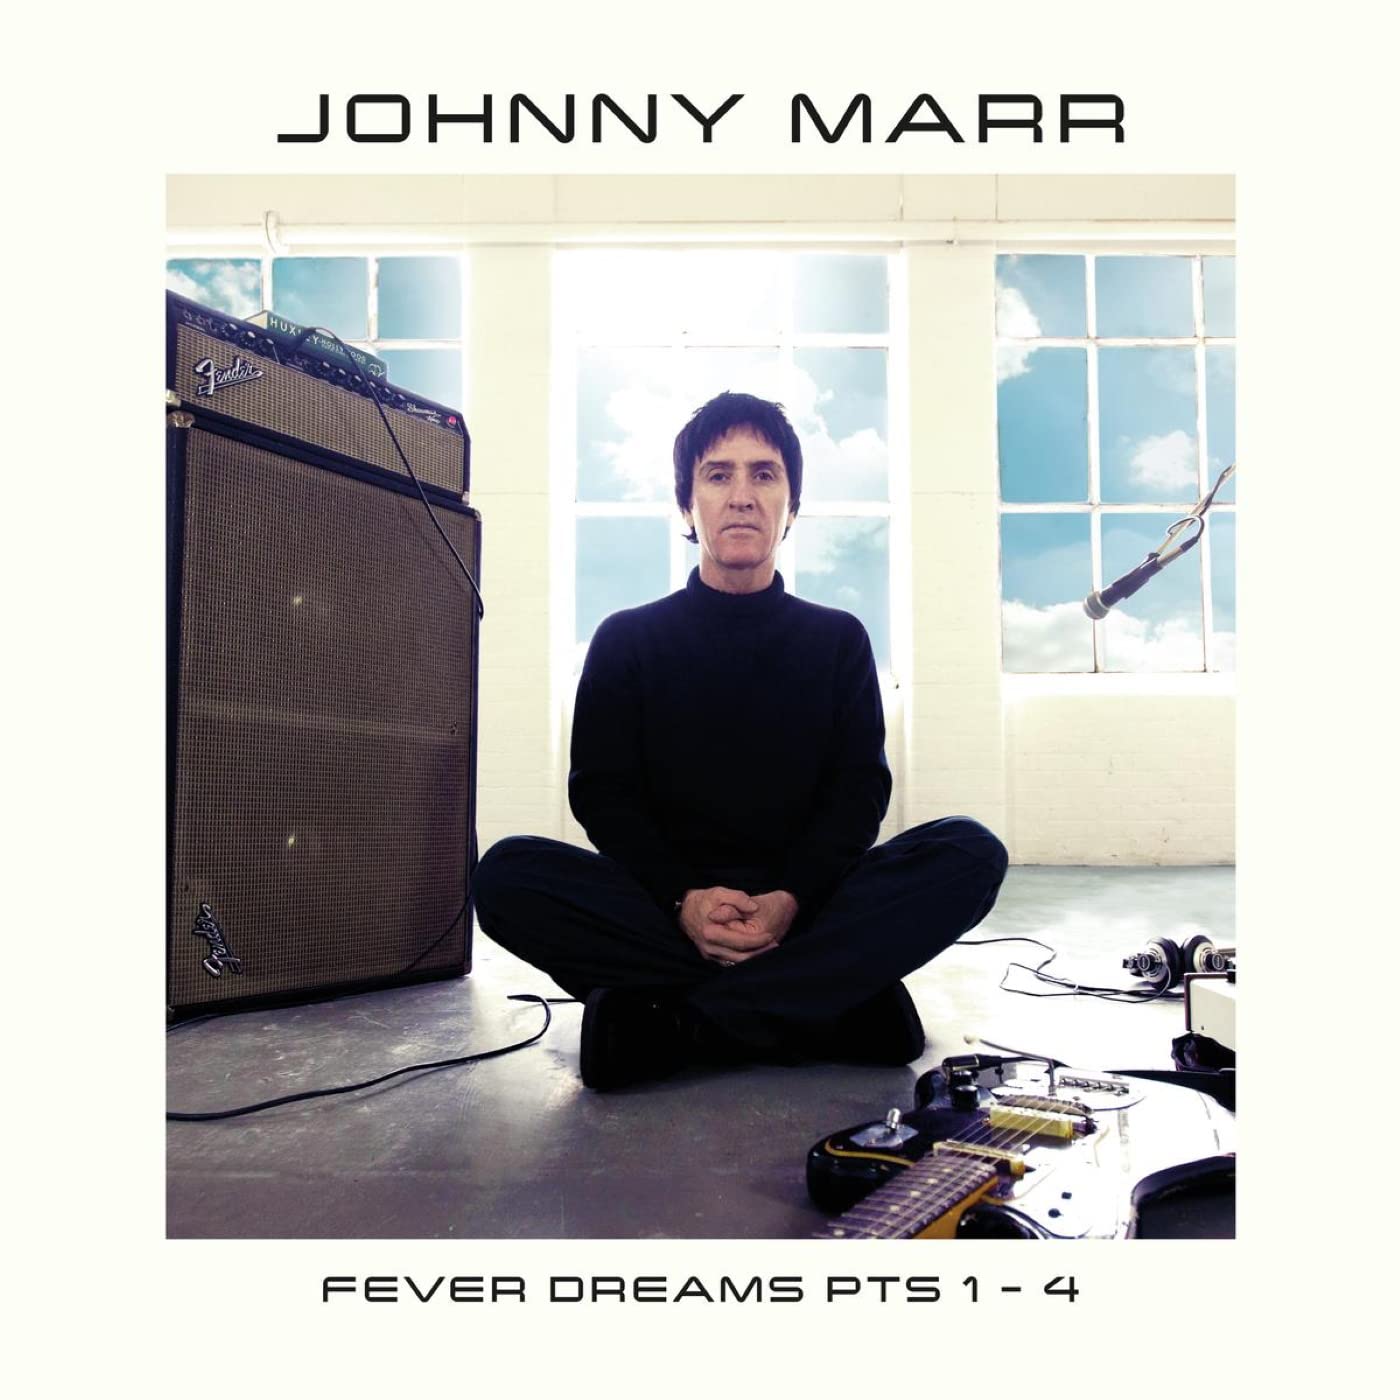 Johnny Marr Fever Dreams Pts 1 4